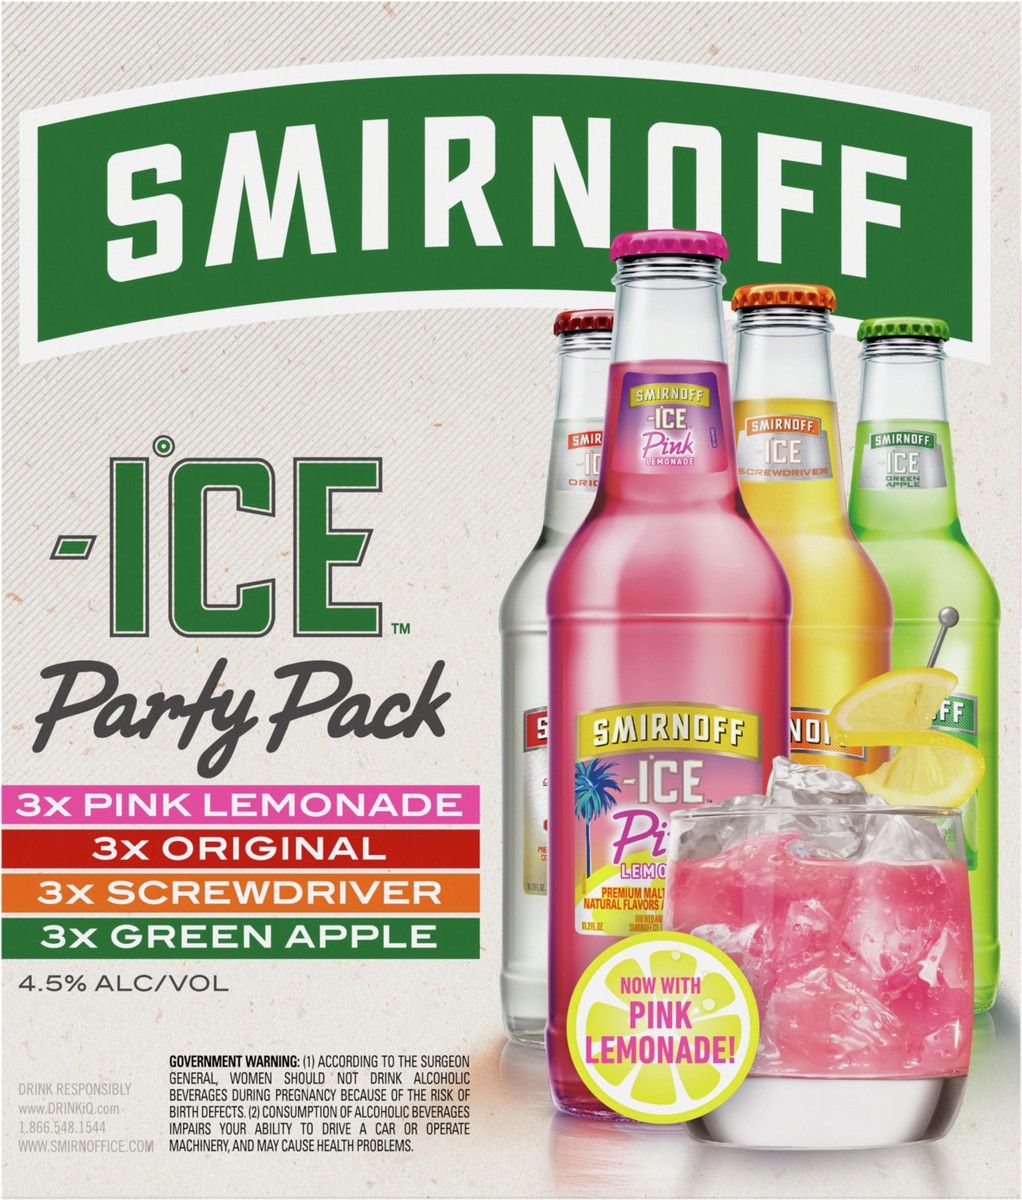 slide 7 of 9, Smirnoff Ice Sparkling Drink Party Pack, 11.2oz Bottles, 12pk, 134.4 fl oz